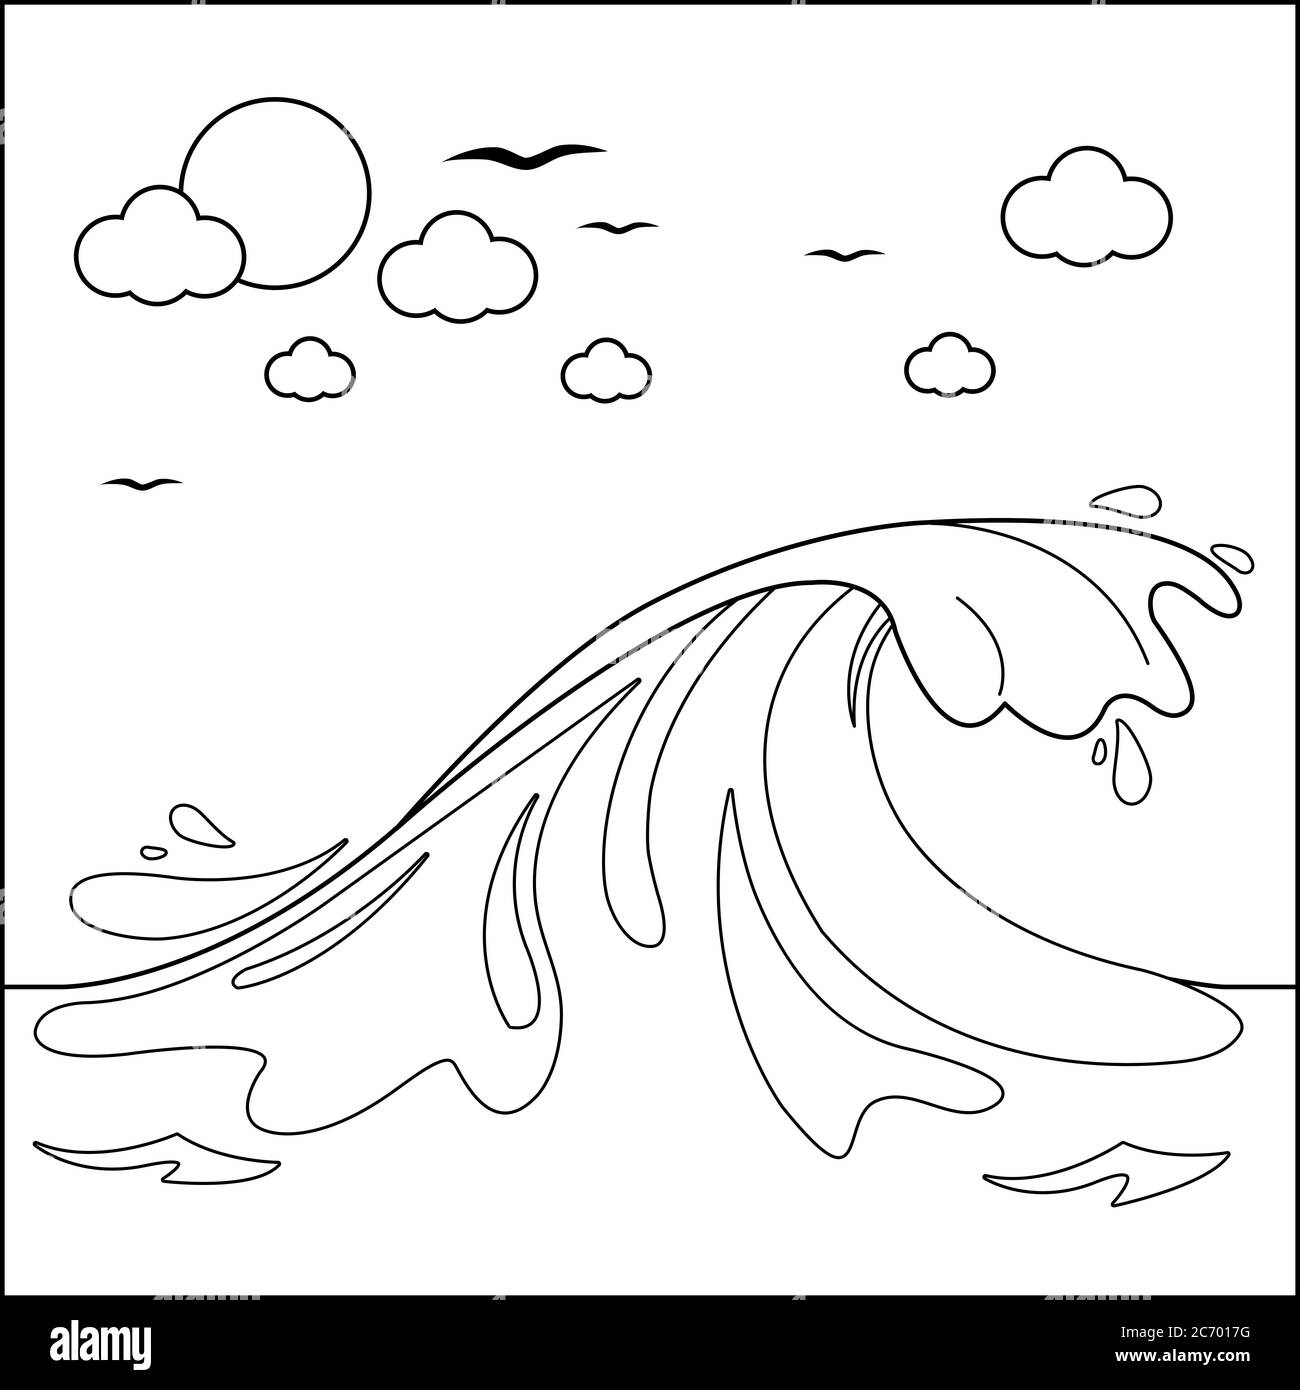 Fond marin avec grande vague. Page de couleur noir et blanc Banque D'Images